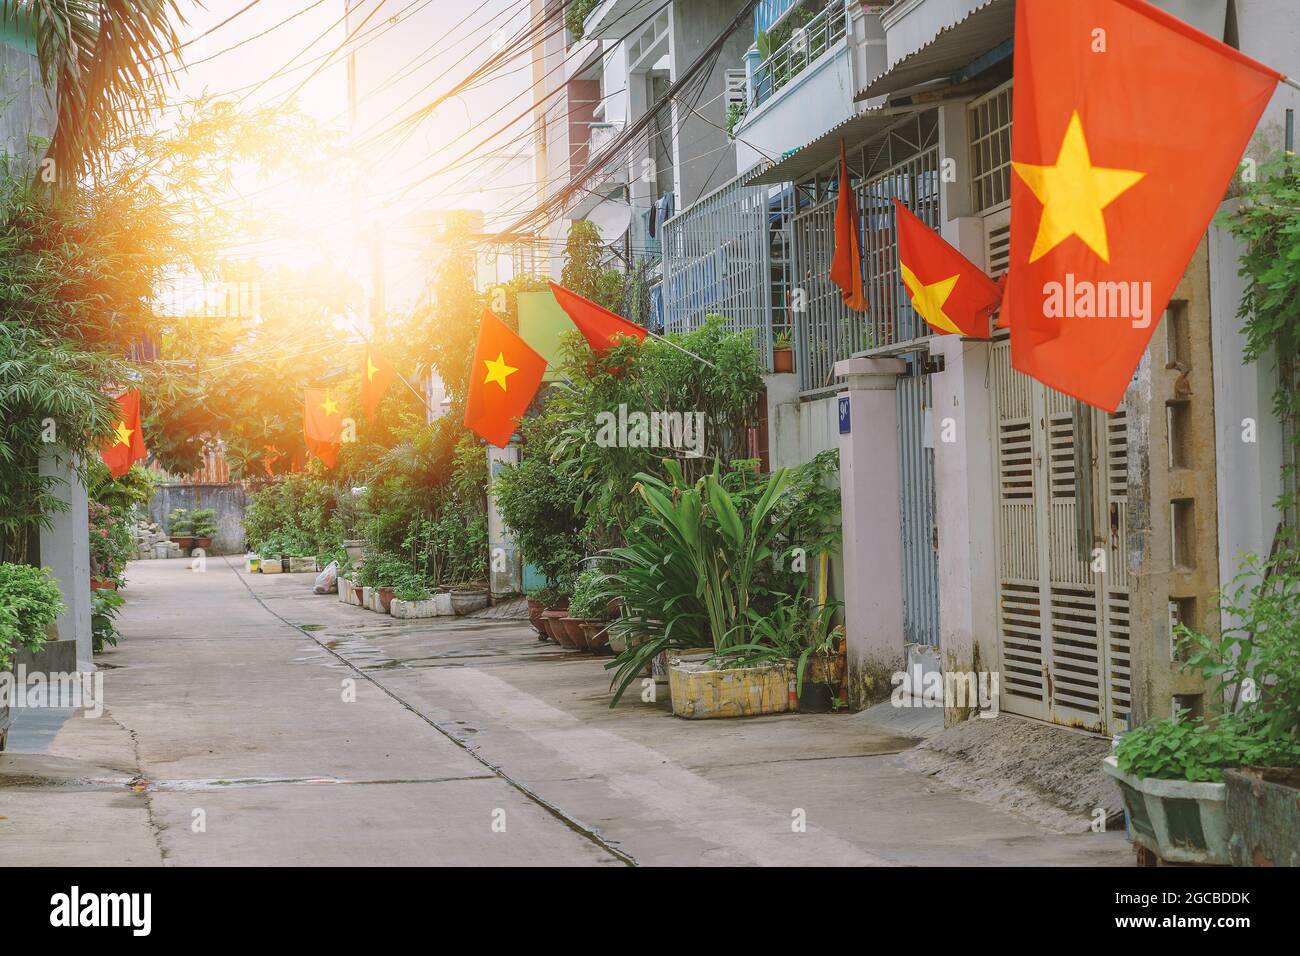 Flaggen entlang einer kleinen Straße in Hanoi. Nationale vietnamesische Flaggen in Häusern engen Wohnstraße gesetzt. Patriotismus der Bürger während der Feier von Stockfoto